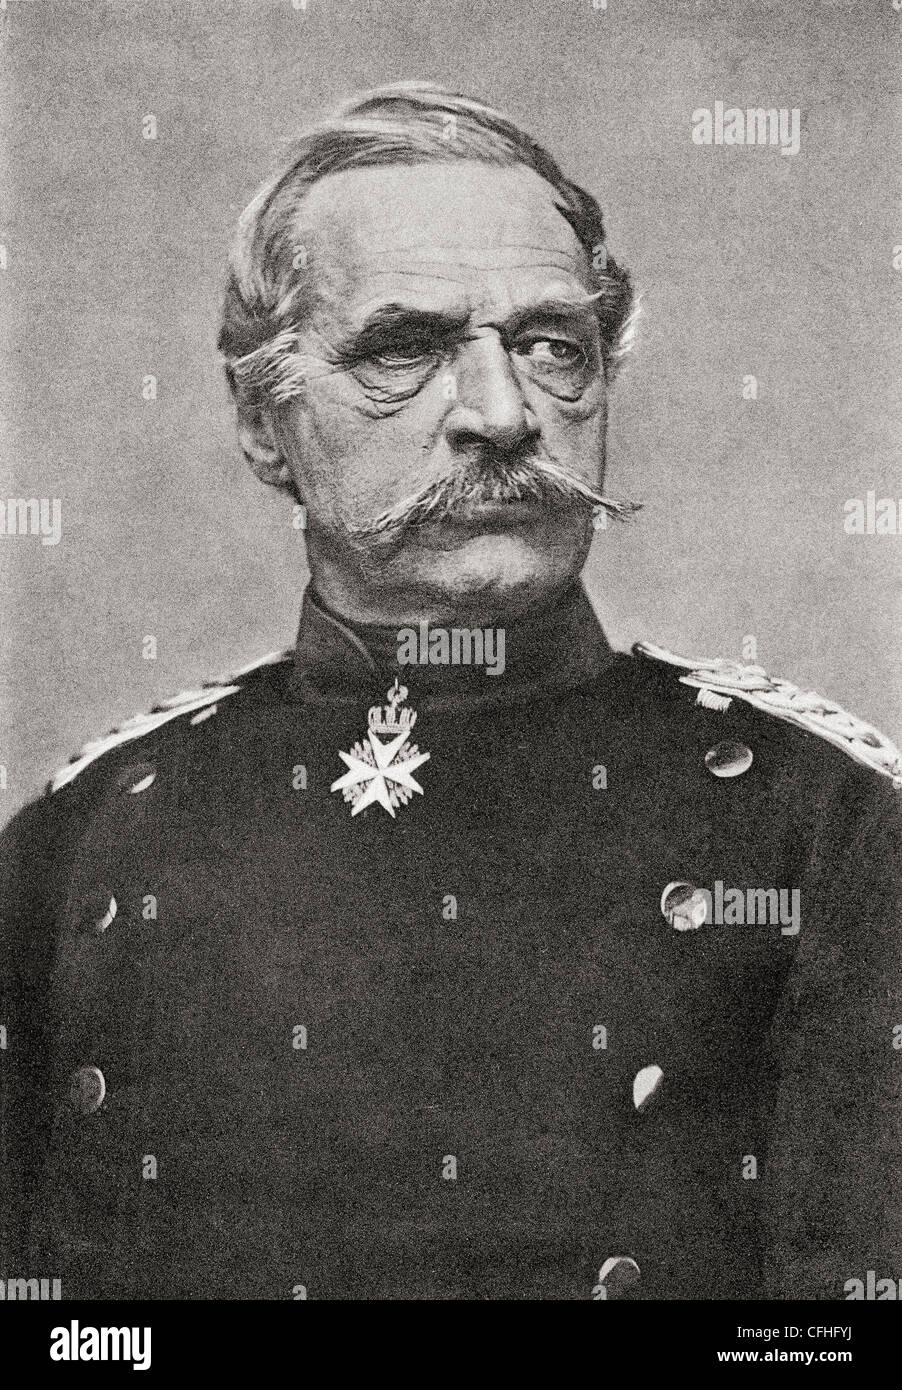 Albrecht Theodor Emil Graf von Roon, 1803 - 1879. Soldat prussien, homme d'État et ministre de la guerre. Banque D'Images